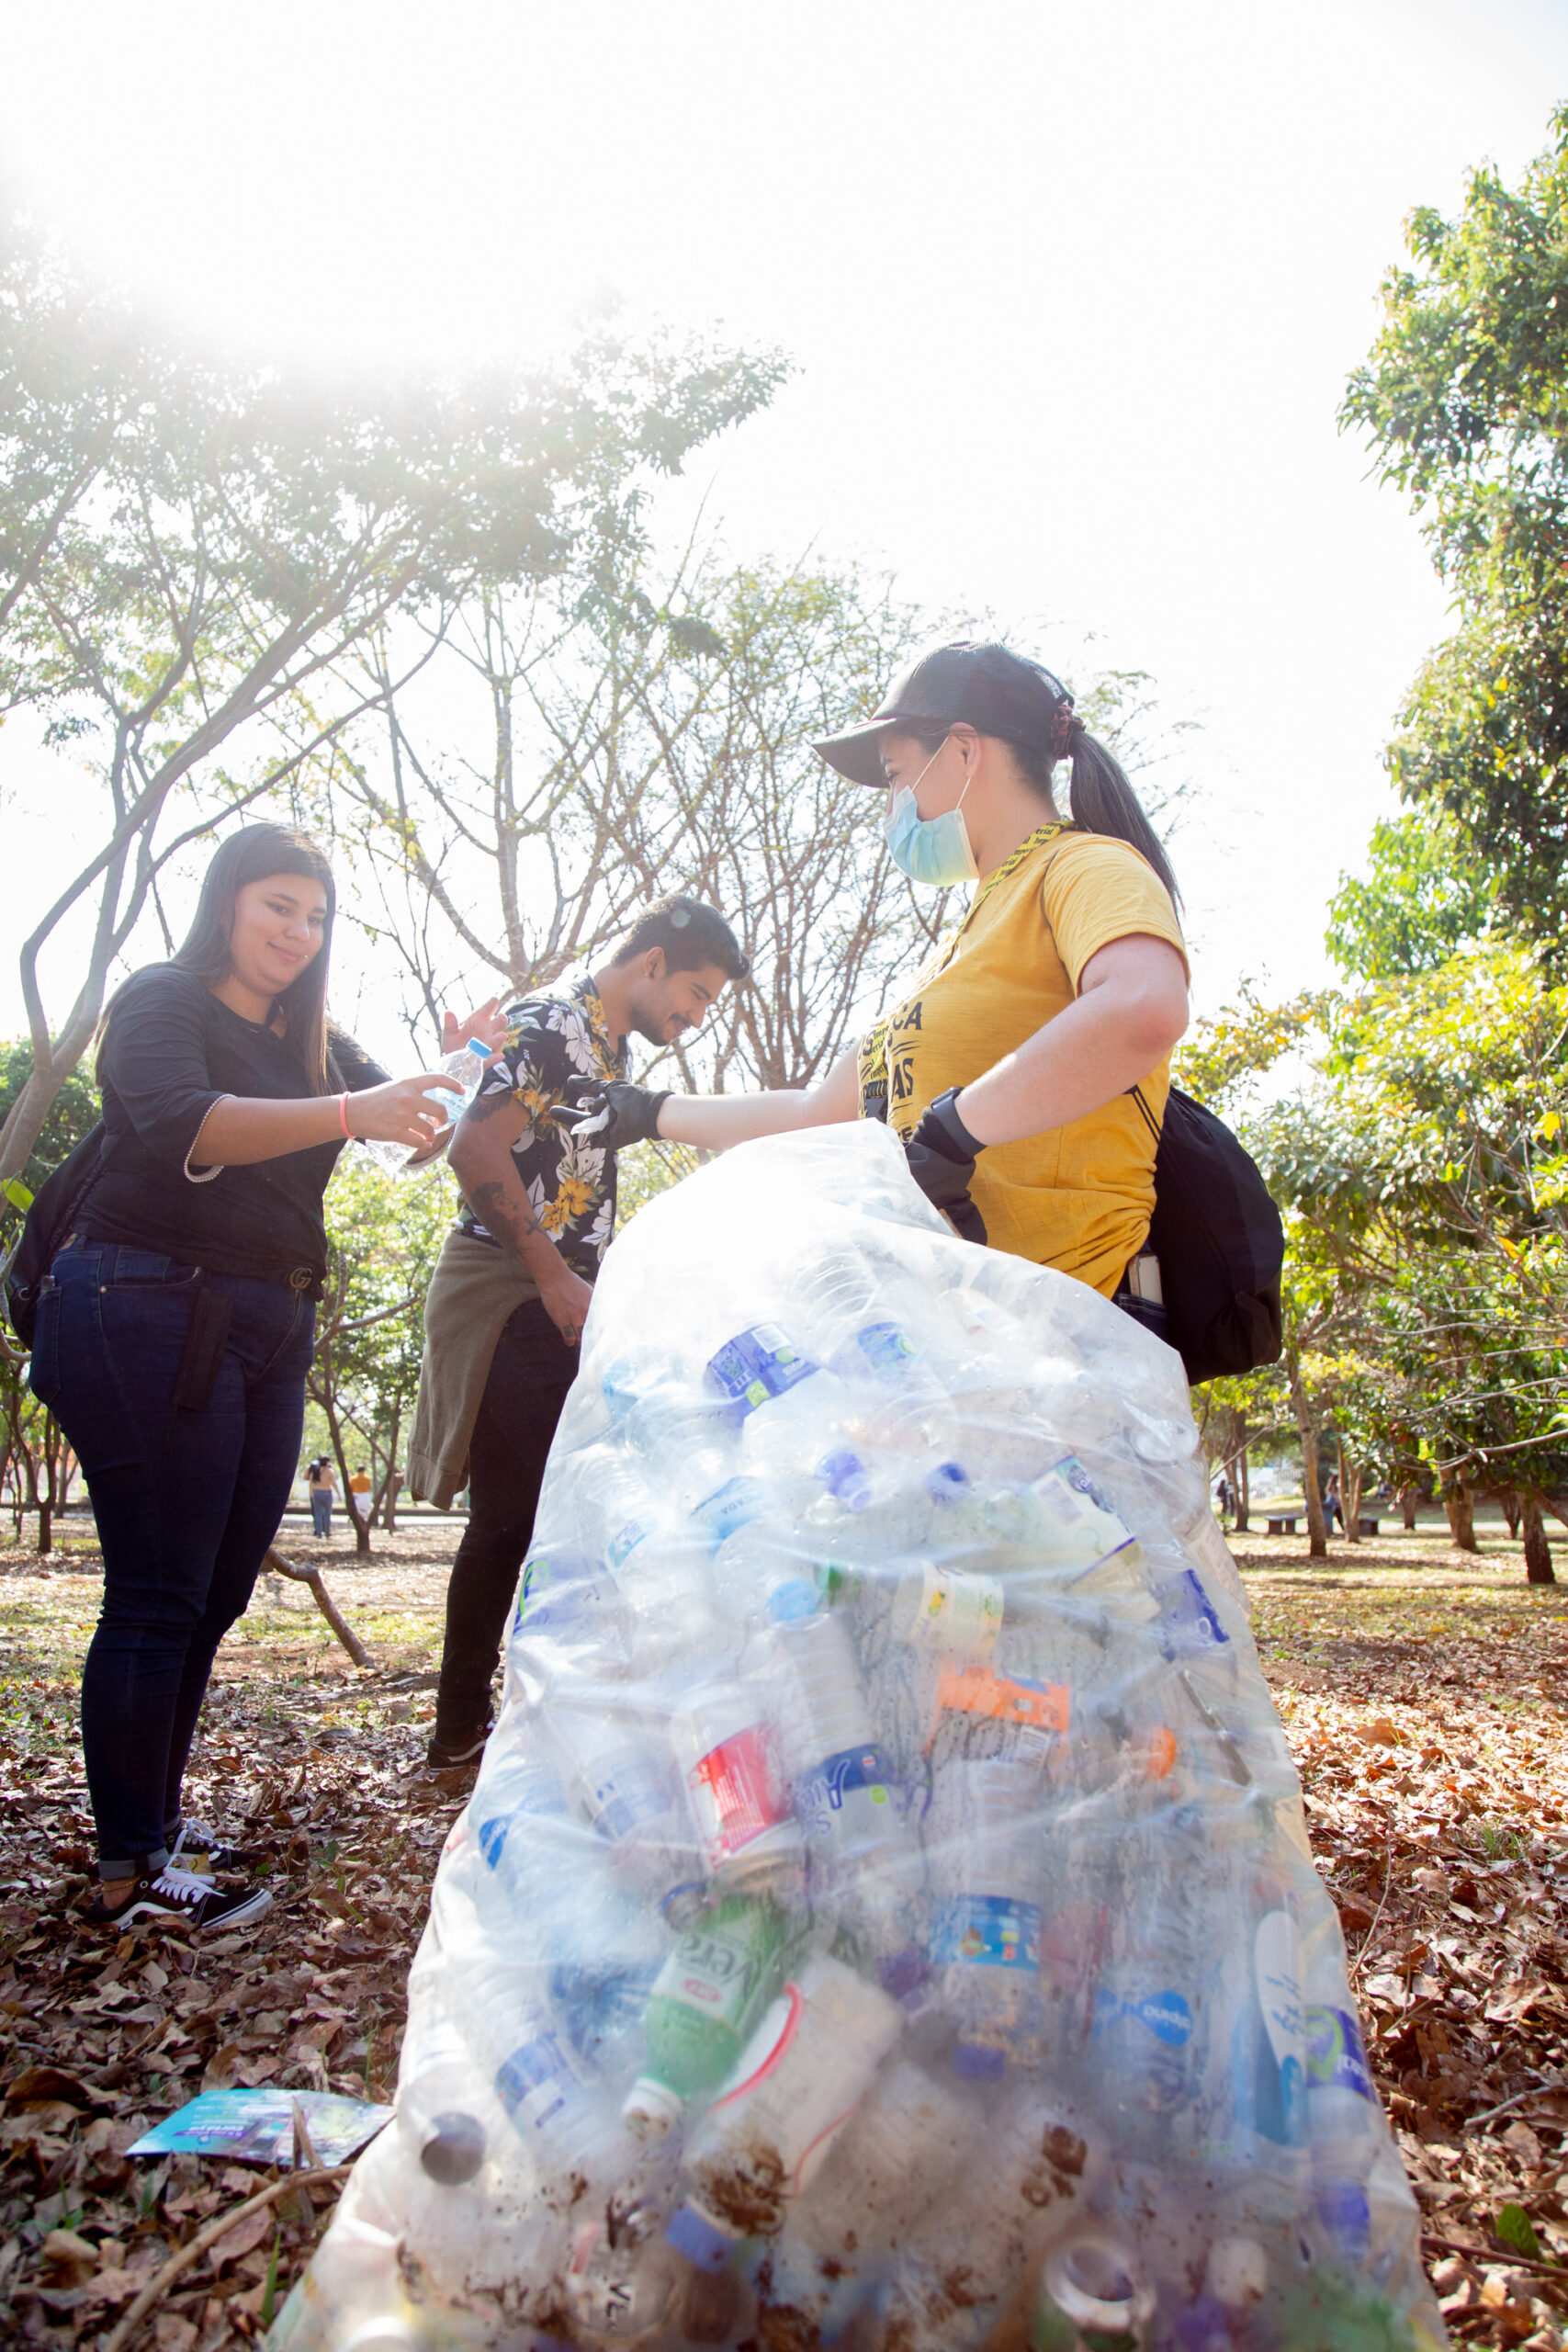 Voluntarios de FIFCO harán recolección de residuos en las afueras del Estadio Nacional
